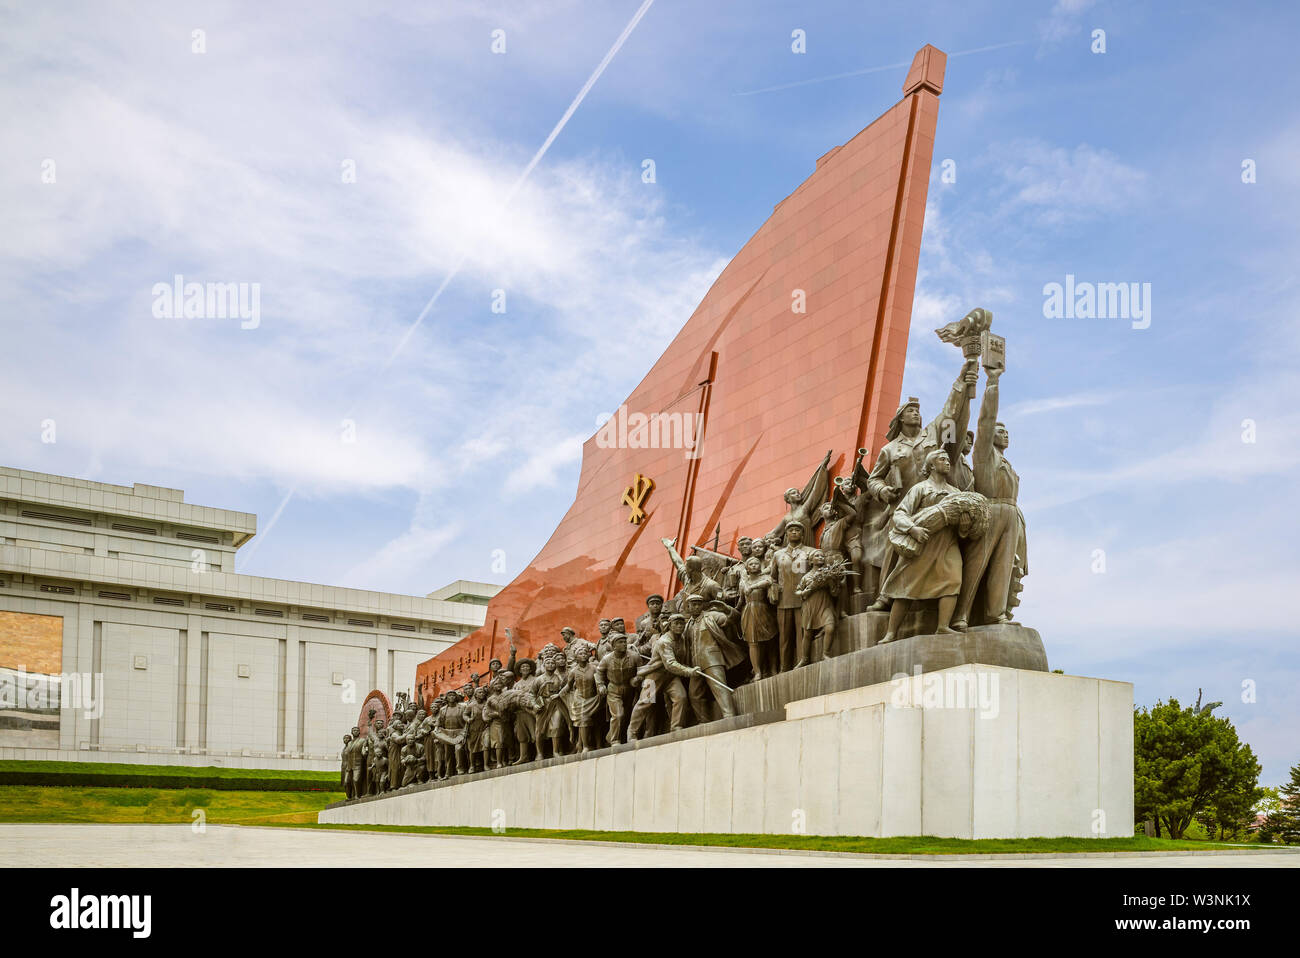 Pyongyang, Corea del Norte - Abril 29, 2019: la colina Mansu gran monumento, originalmente dedicado en abril de 1972 en honor de Kim Il Sung por su 60 cumpleaños. Foto de stock